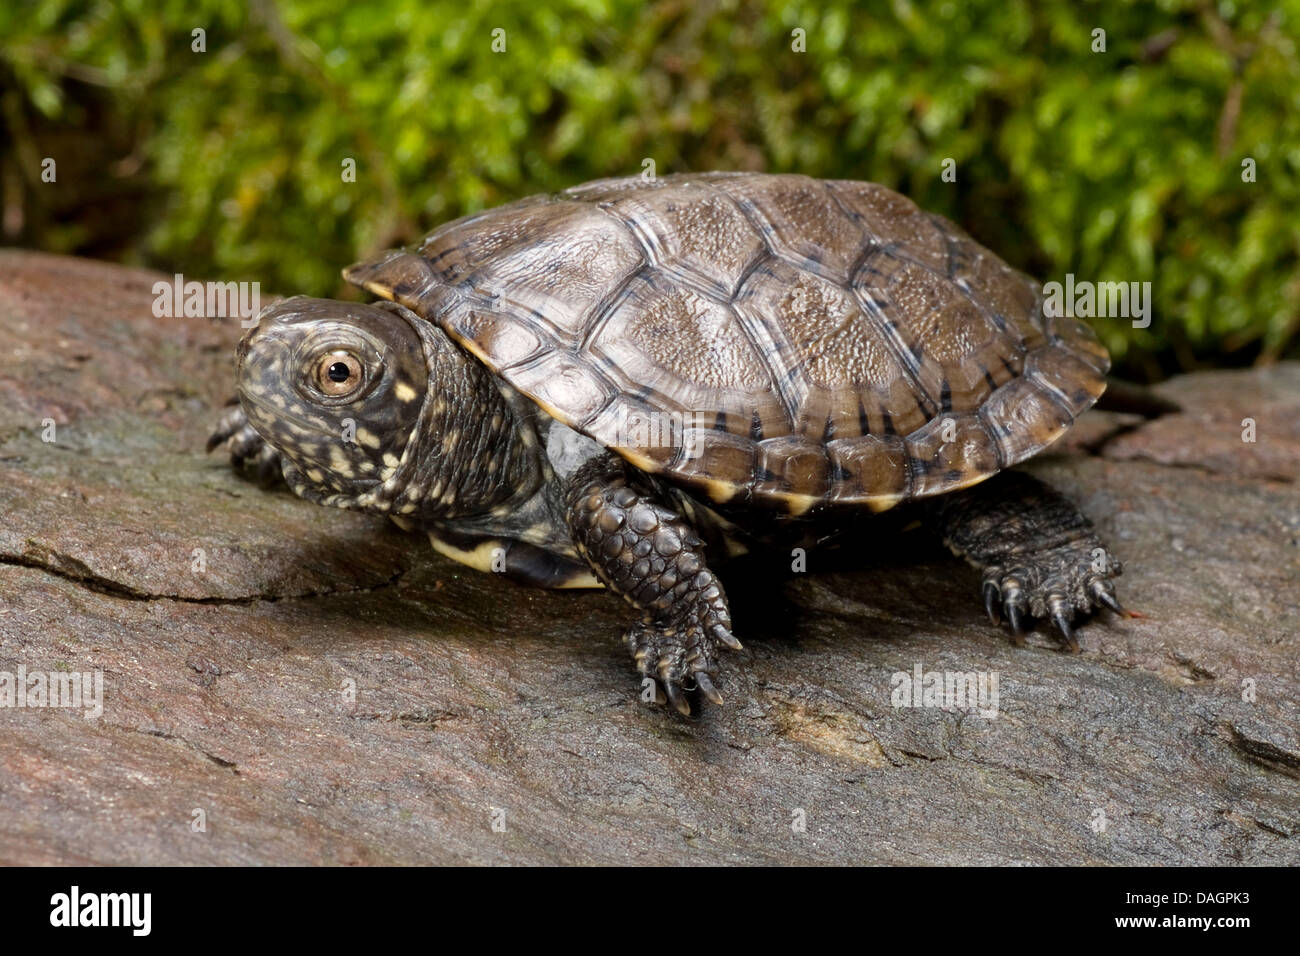 Étang d'Europe, tortue tortue de l'étang d'Europe, Emys orbicularis (tortue), sur une pierre Banque D'Images